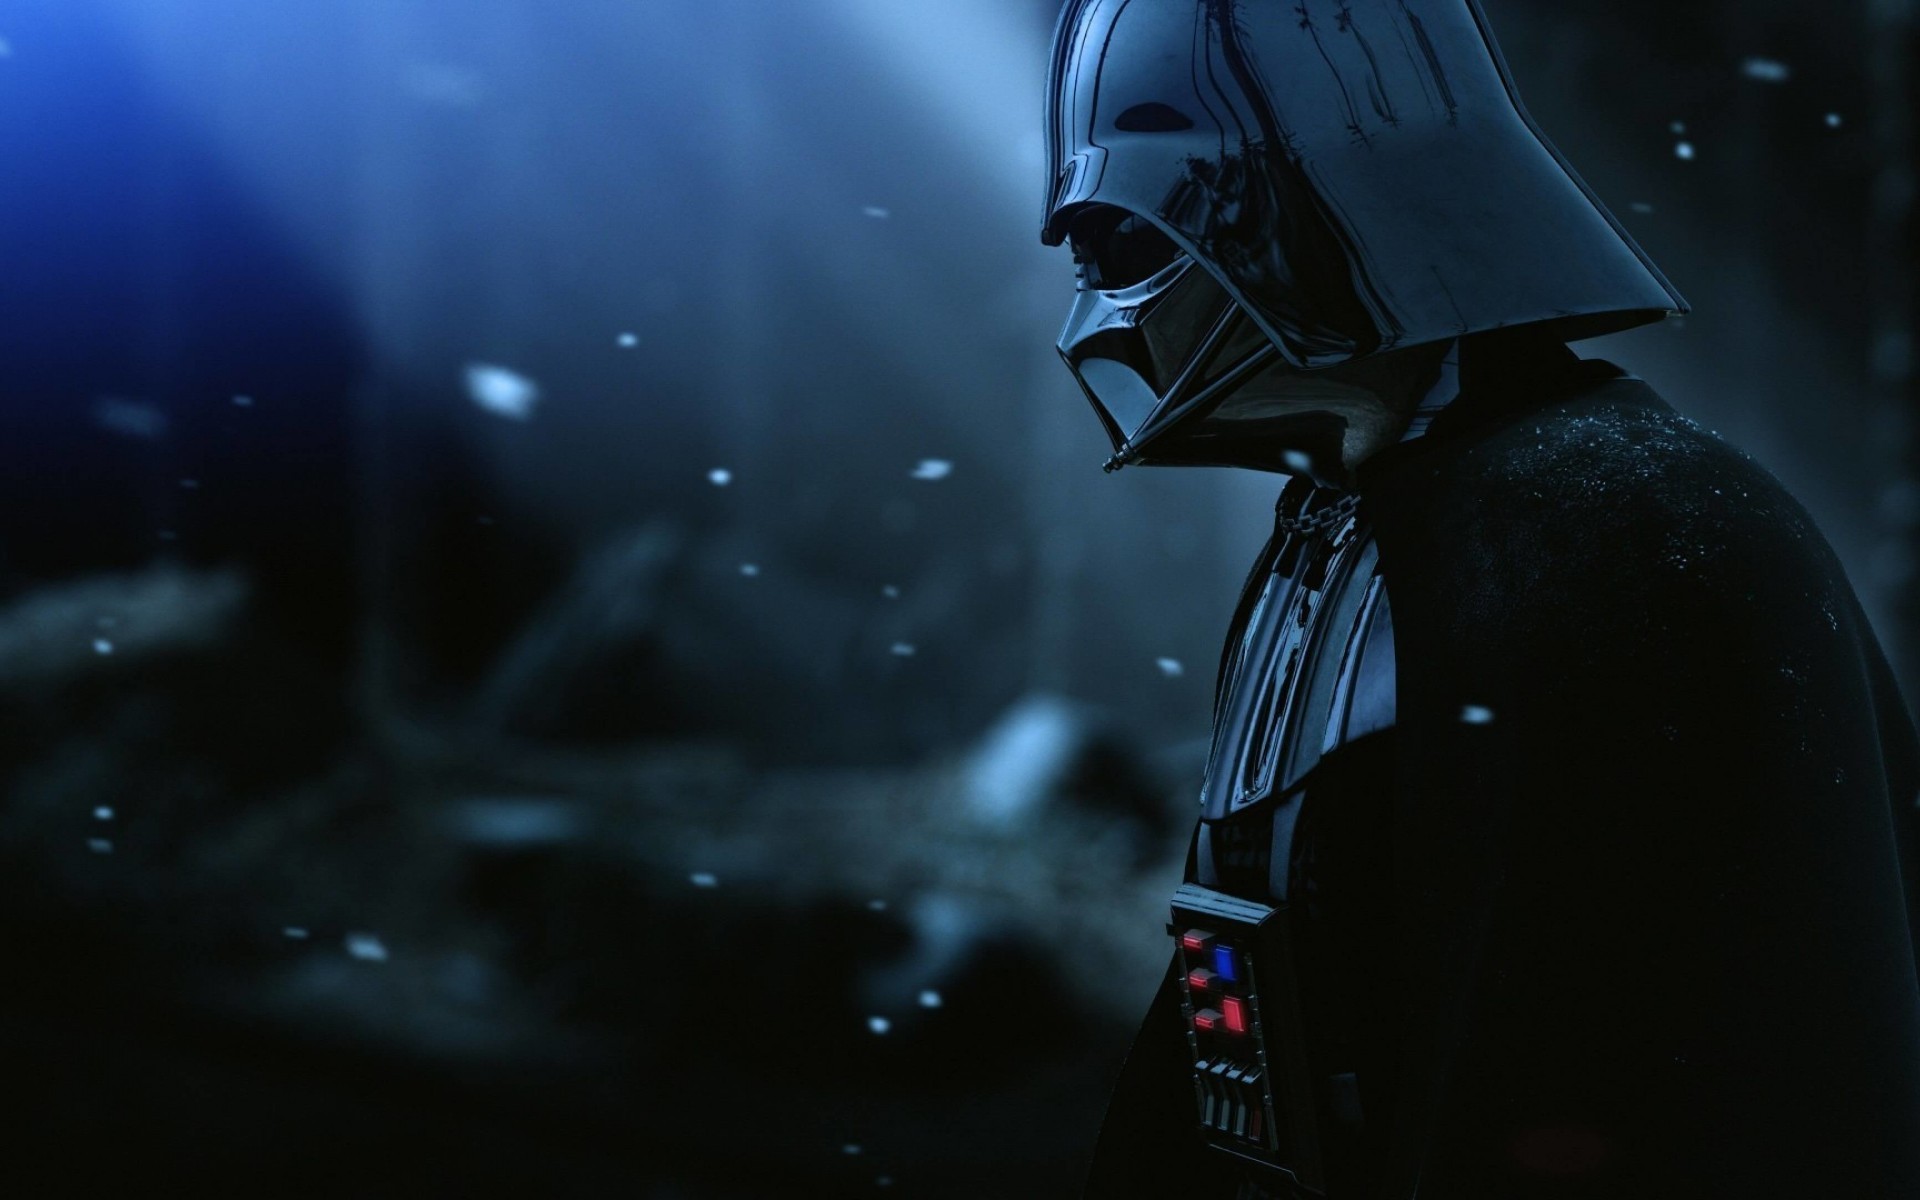 Darth Vader - The Force Unleashed 2 Wallpaper for Desktop 1920x1200